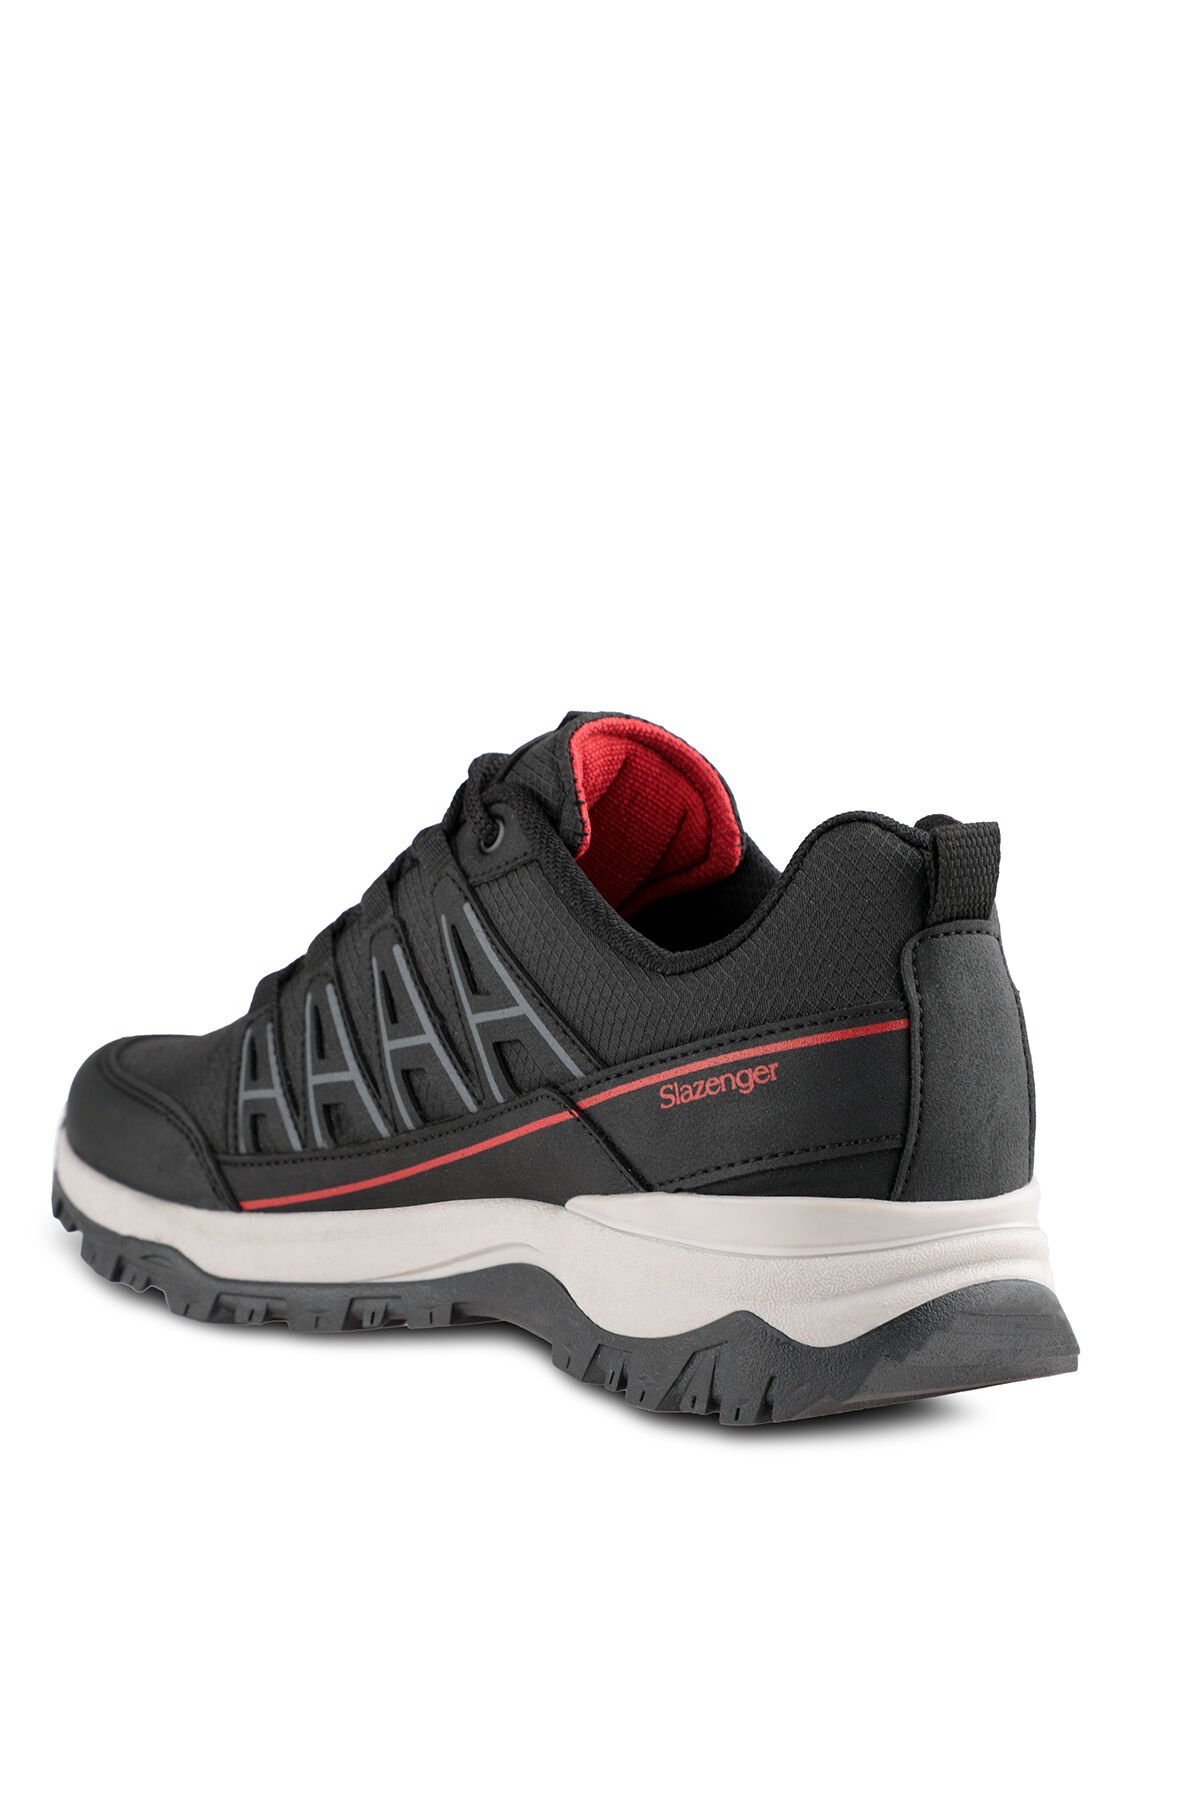 Slazenger KIERA I Sneaker Kadın Ayakkabı Siyah / Kırmızı - Thumbnail